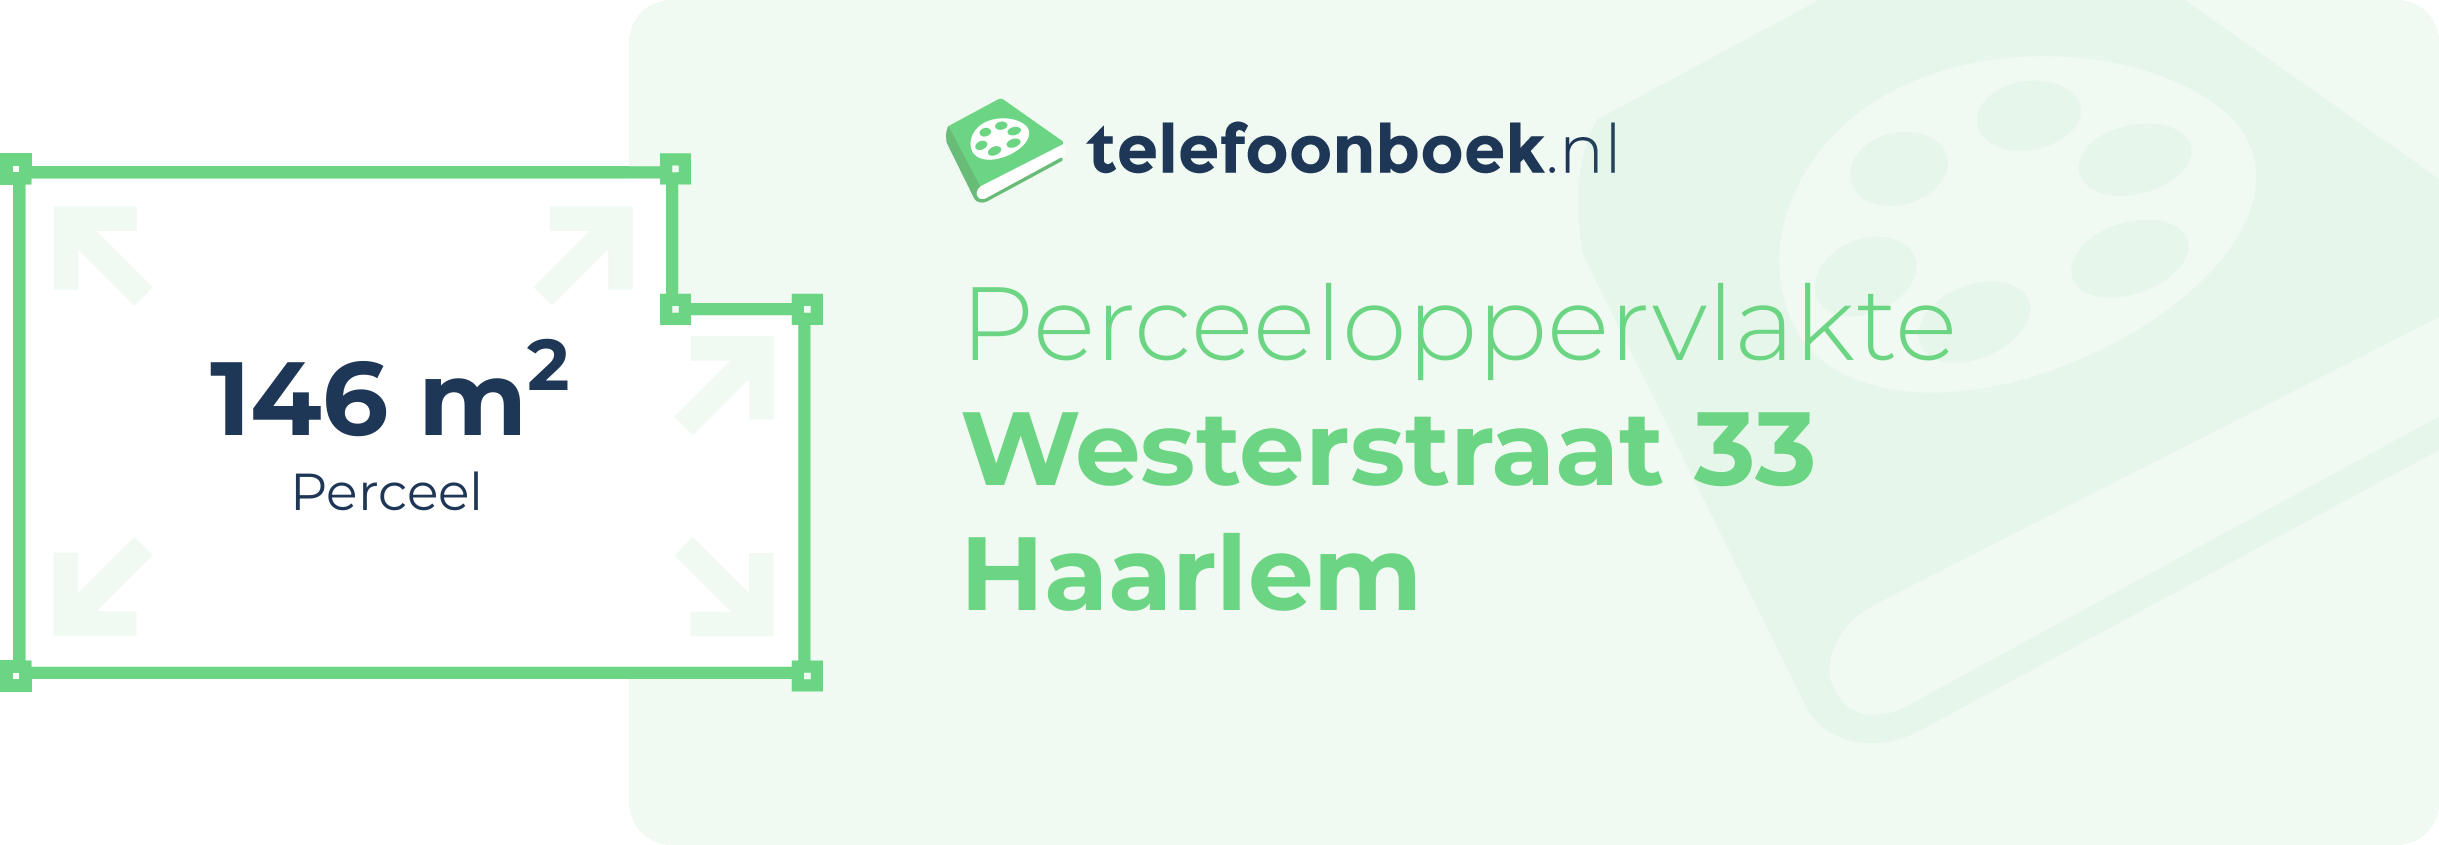 Perceeloppervlakte Westerstraat 33 Haarlem